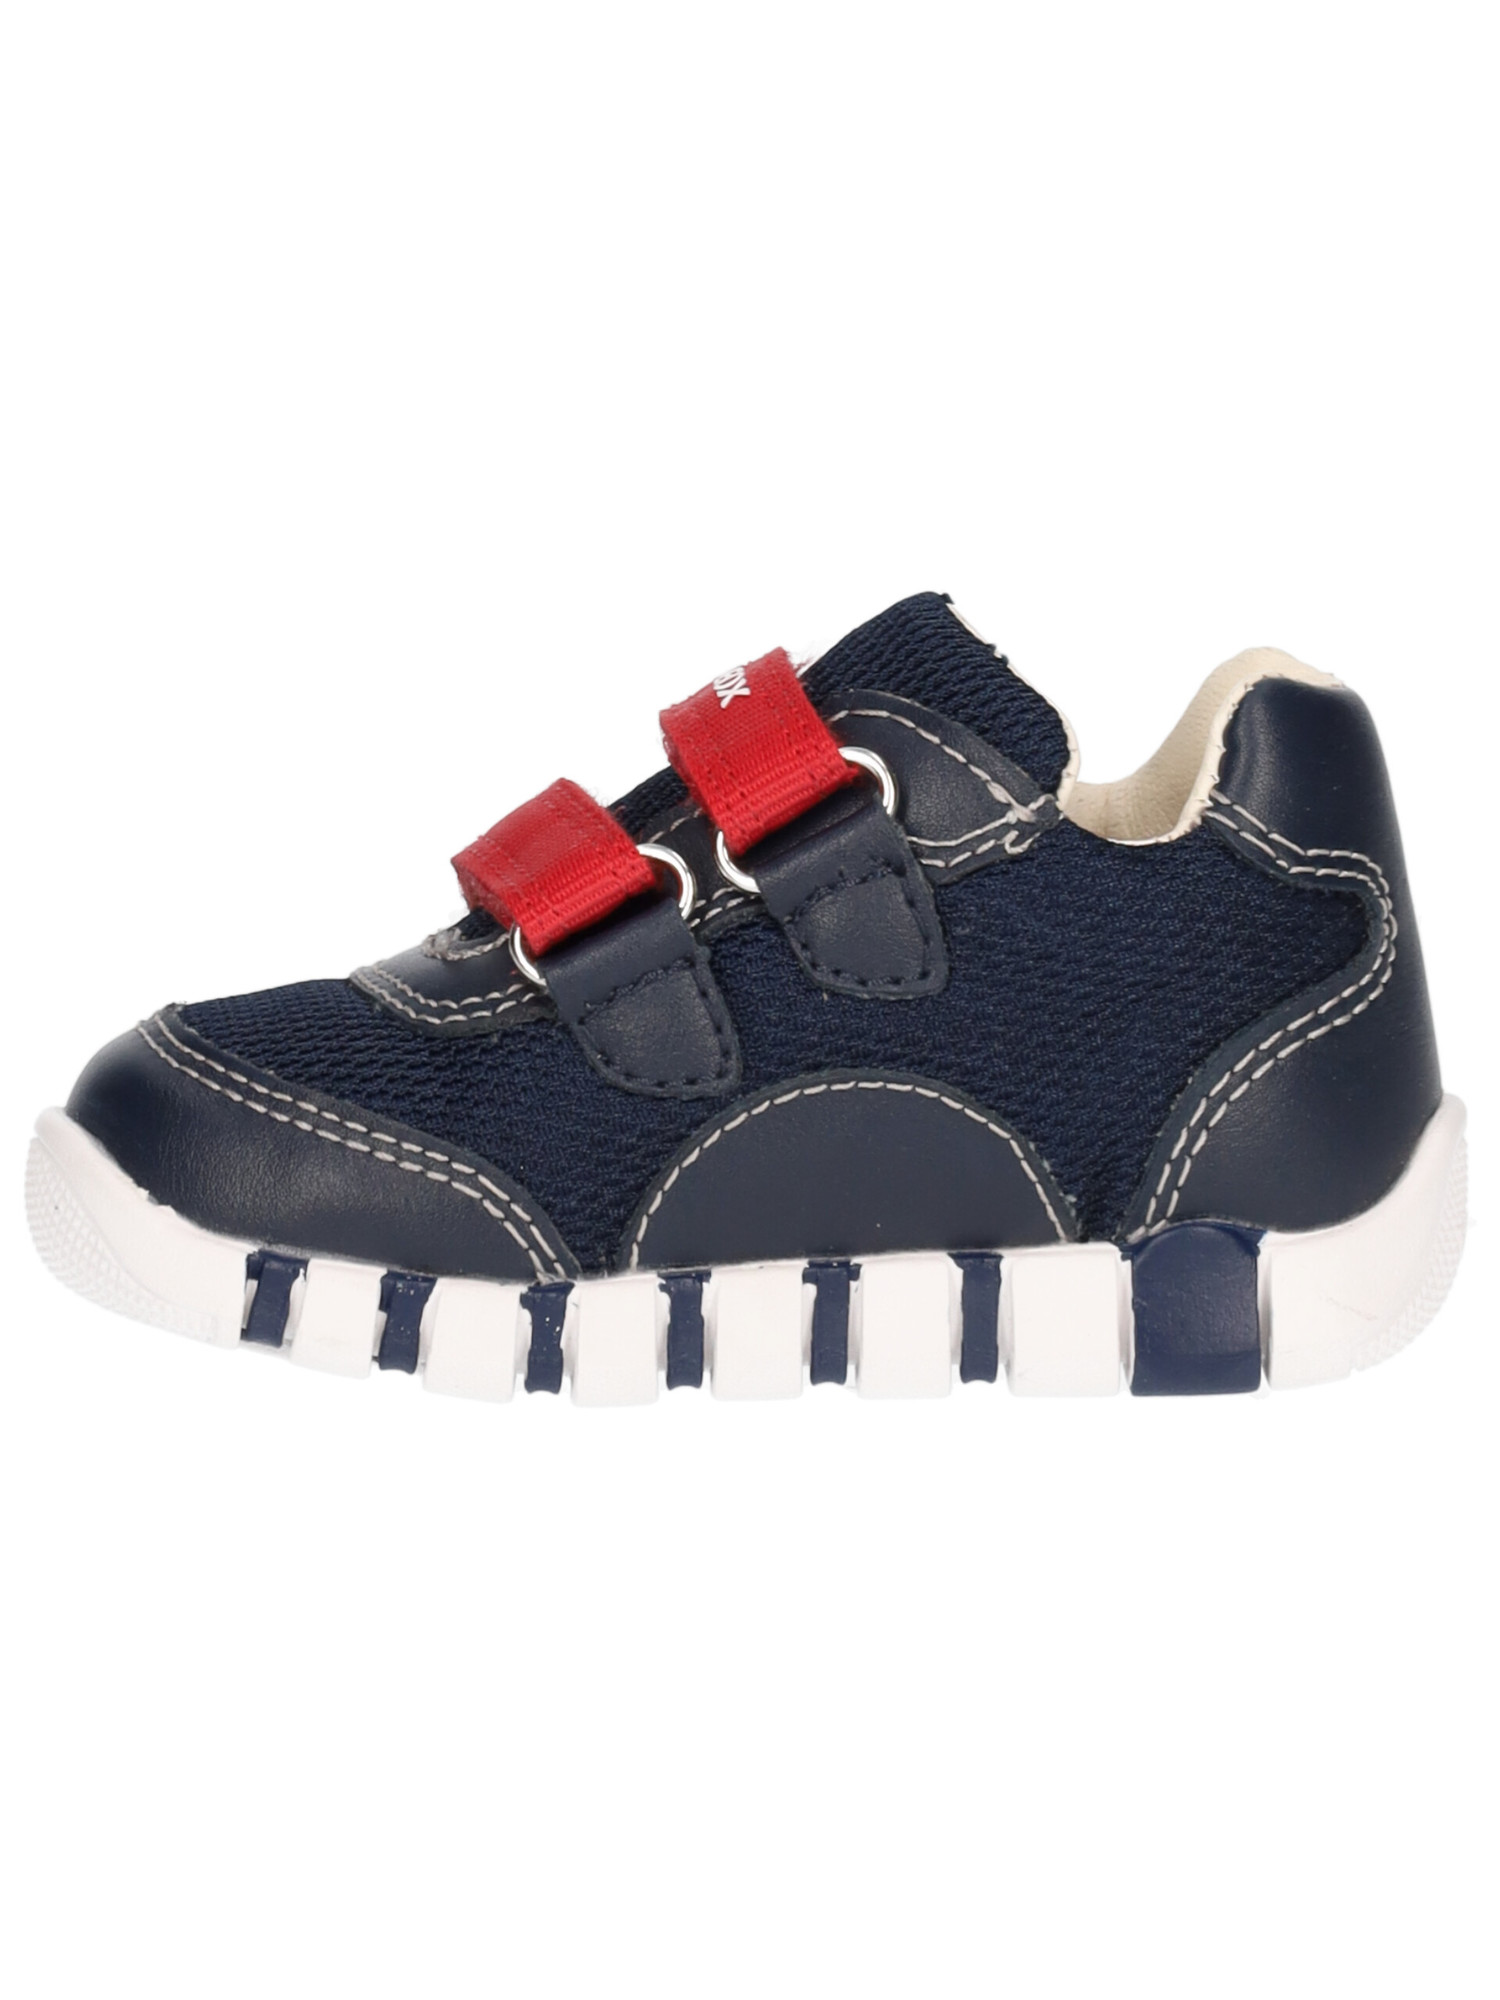 sneaker-geox-iupidoo-primi-passi-bambino-blu-53abab